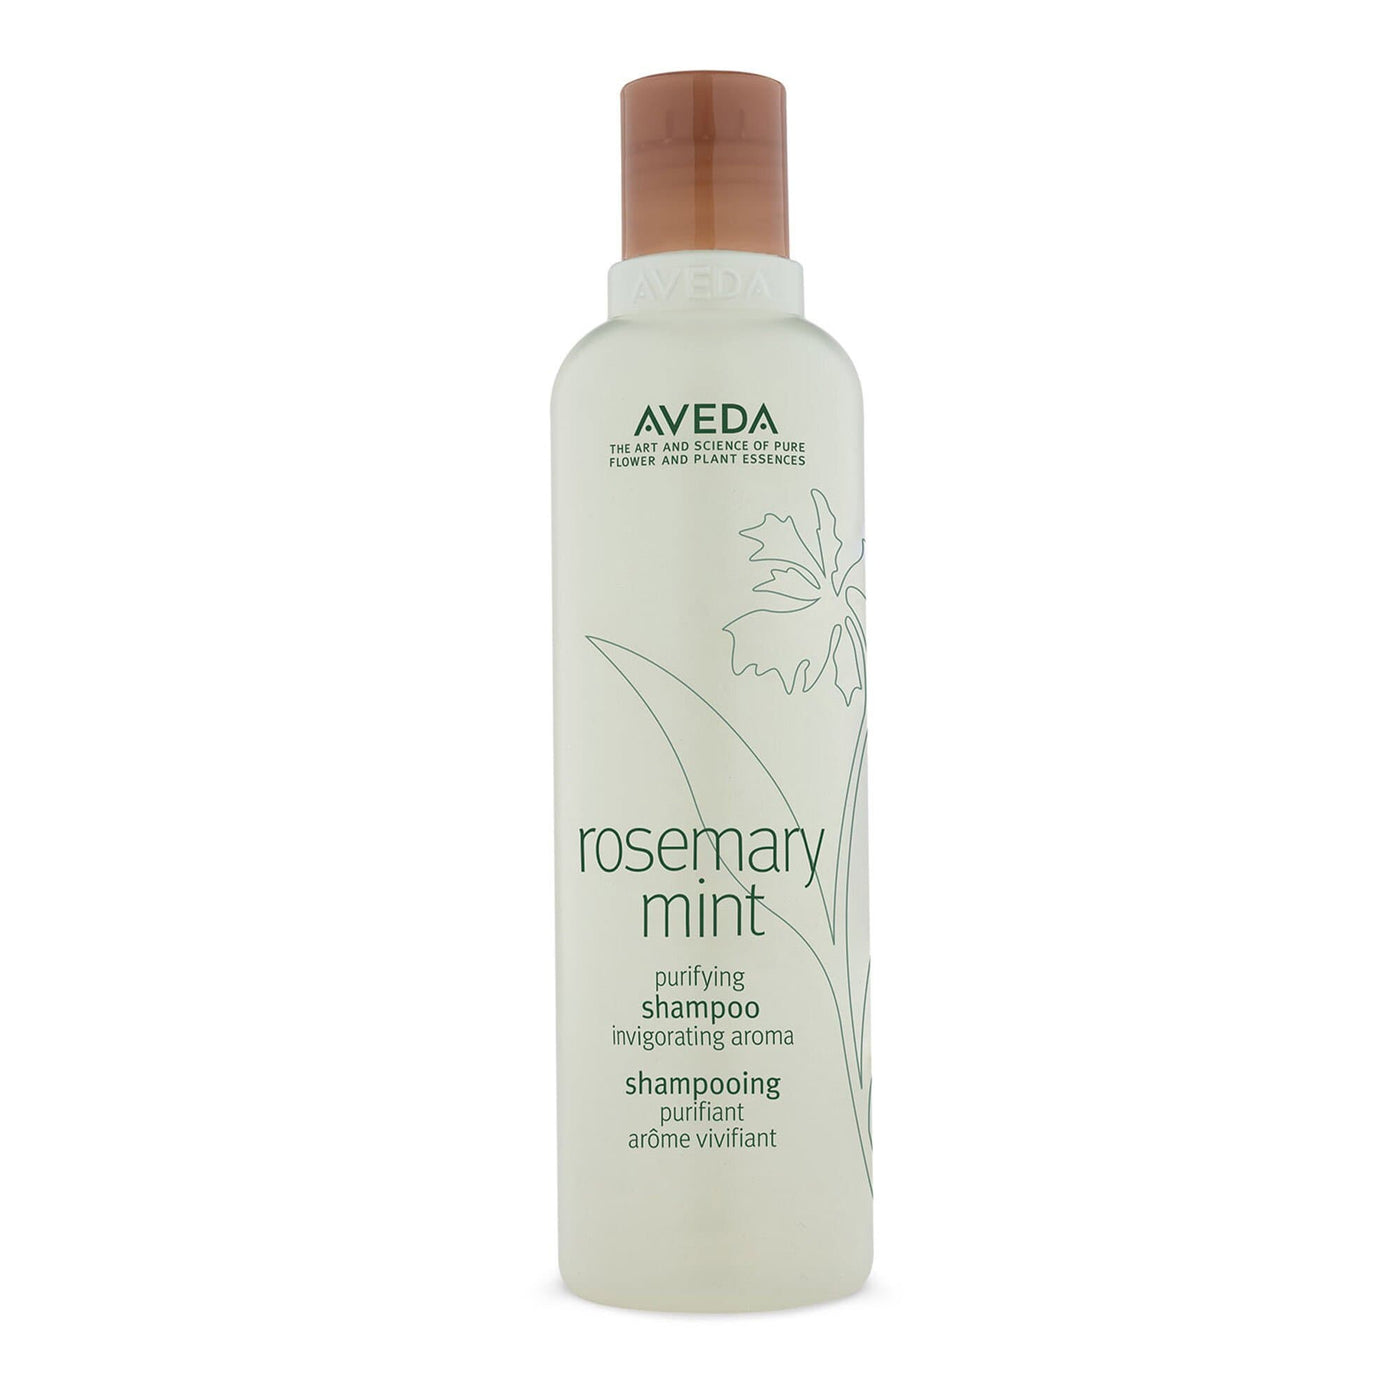 Aveda Shampoo Rosemary mint purifying shampoo 250ml